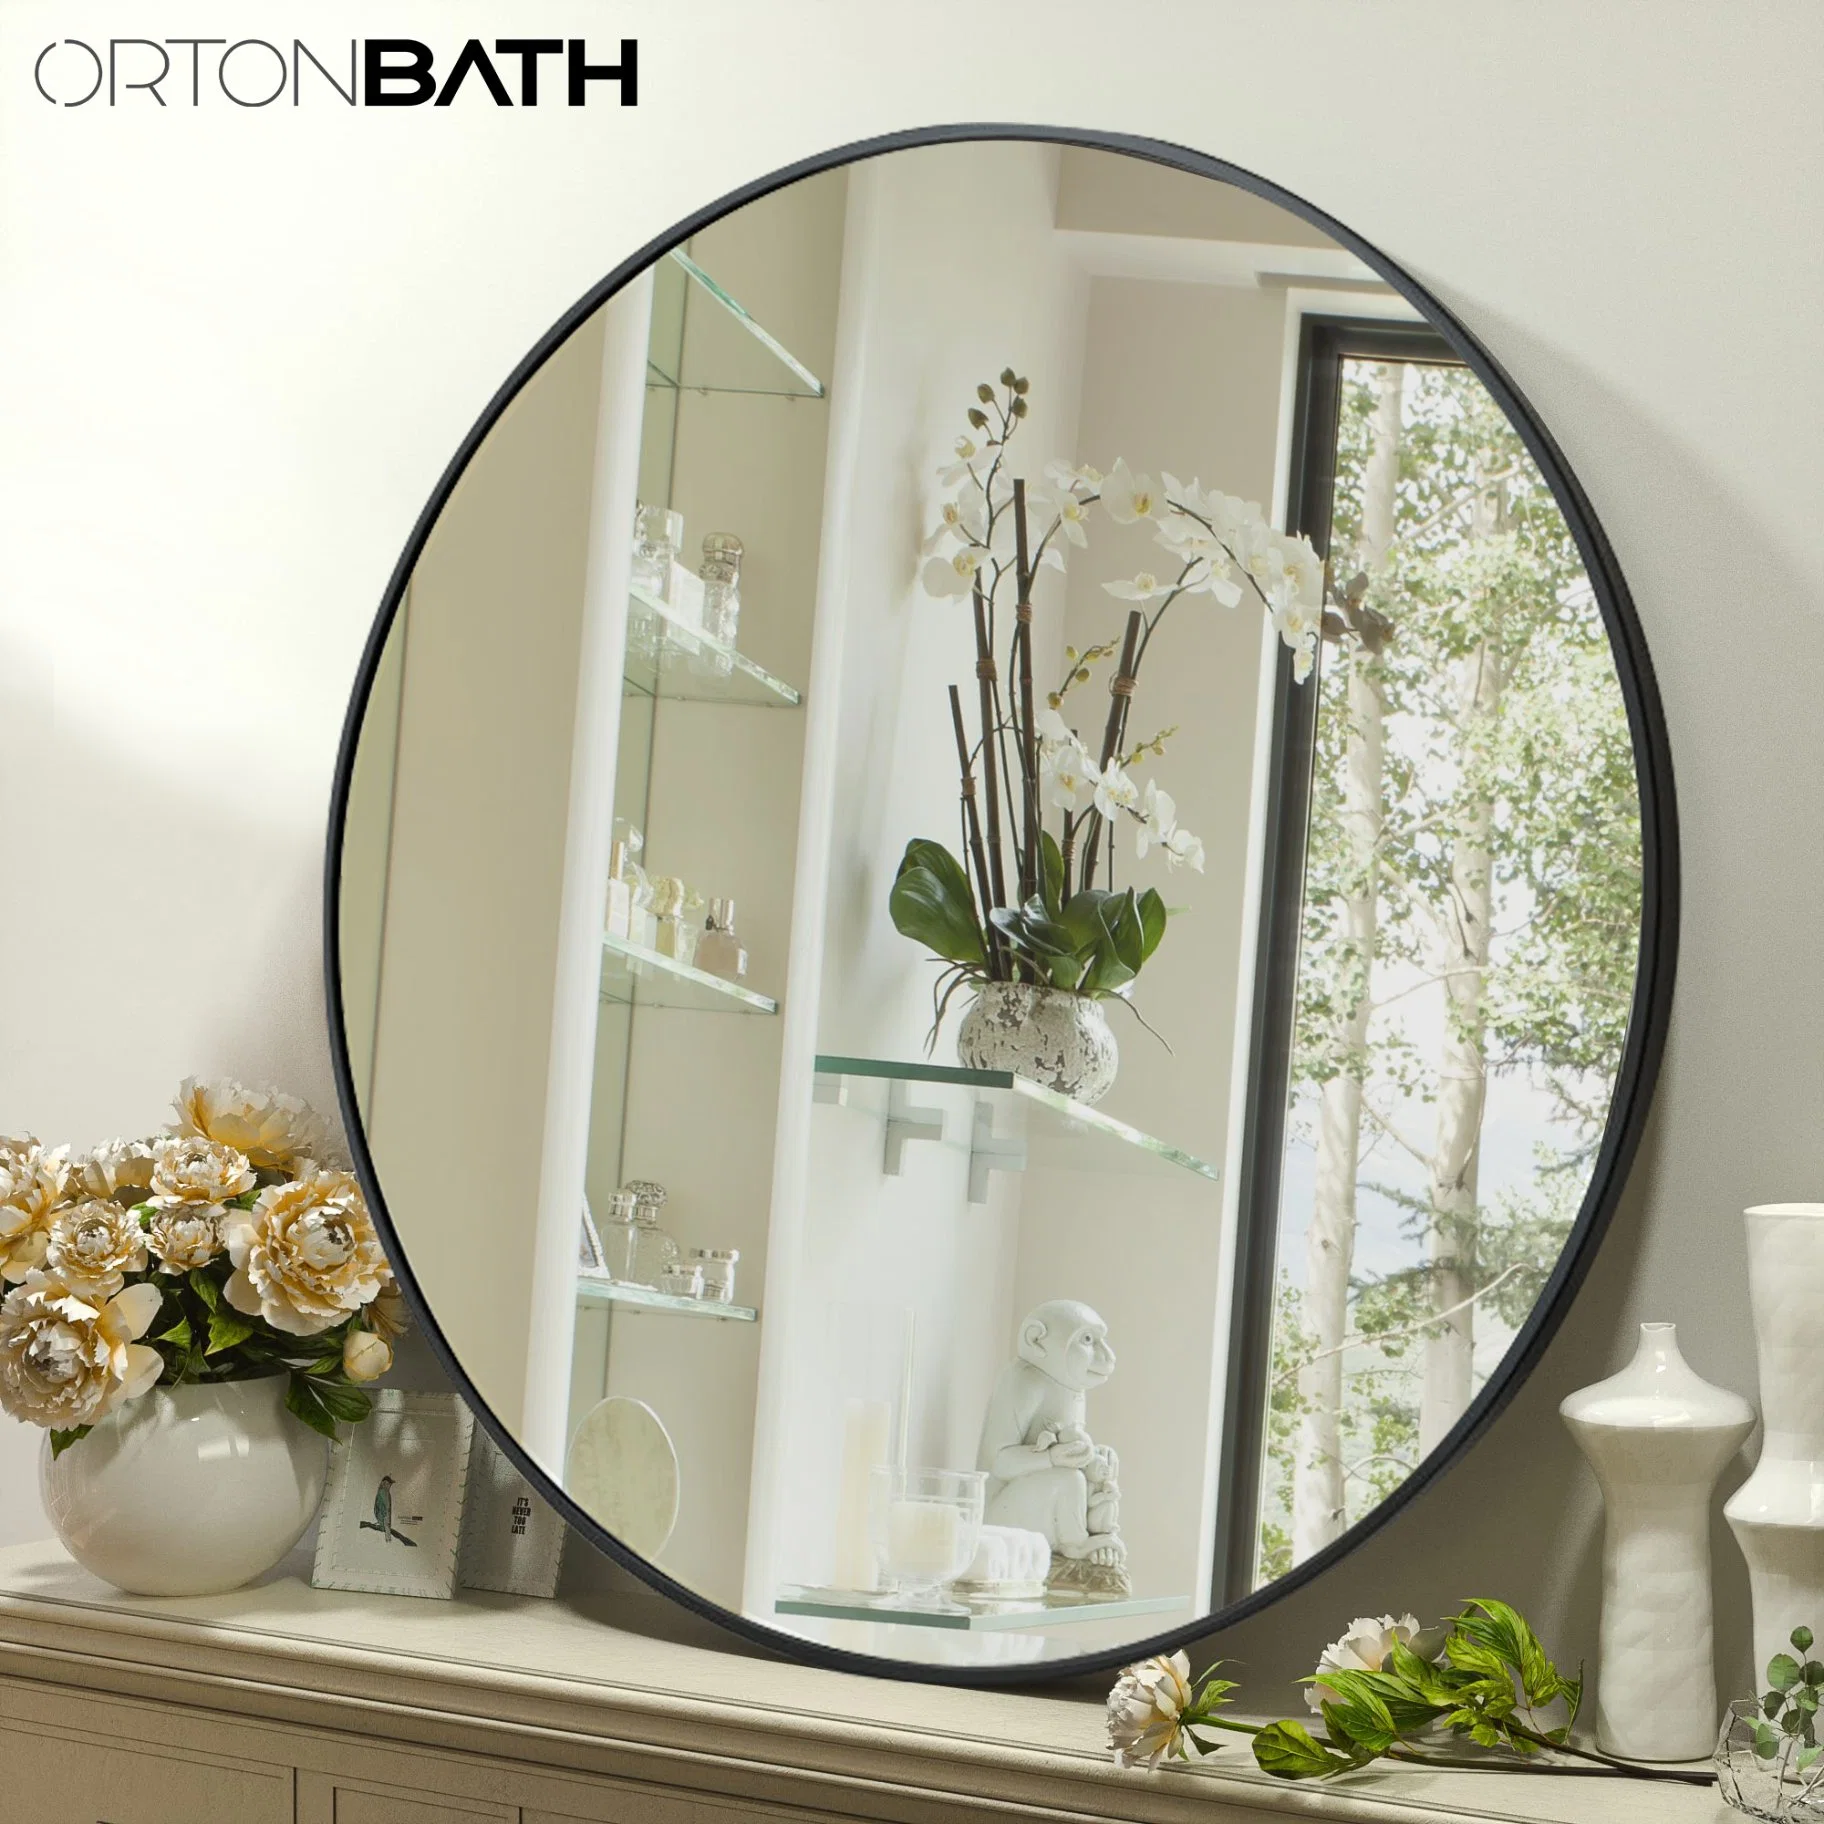 Ortonbath 20 pouces mur suspendu miroir pour salle de bains avec Rond noir métal Framer miroir rond de toilette circulaire pour le bain